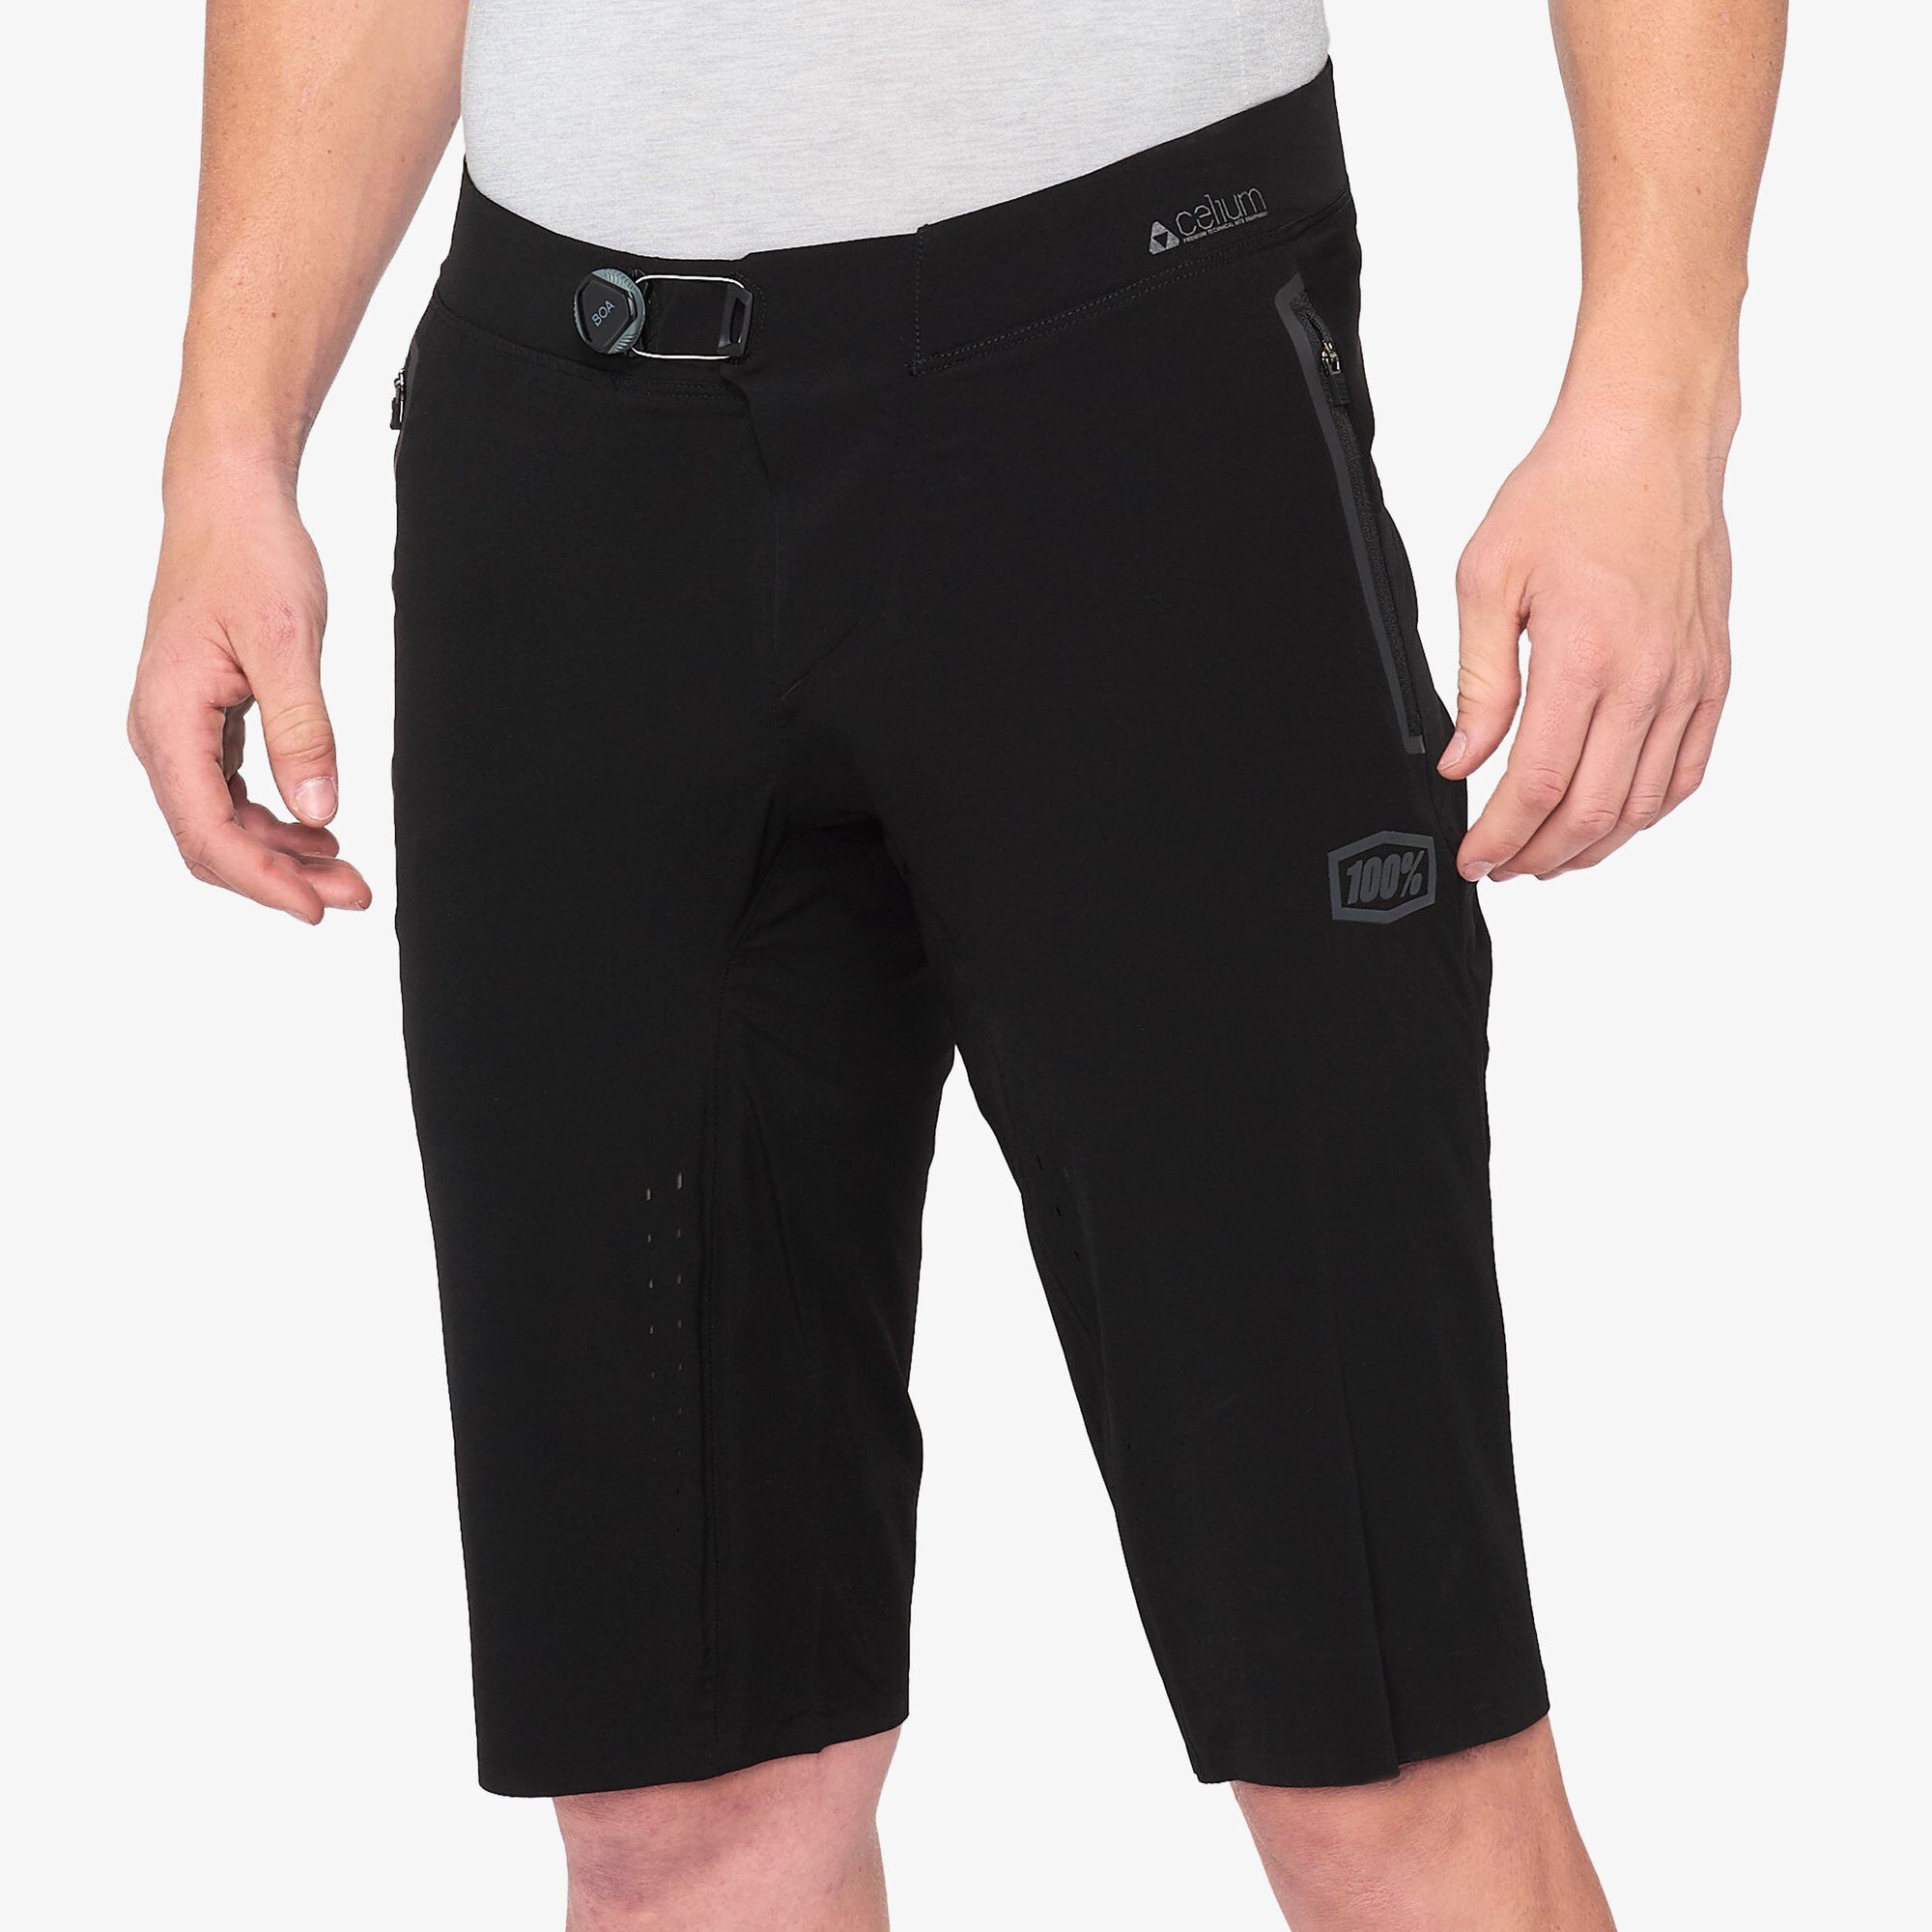 100% Celium - MTB shorts - Men's